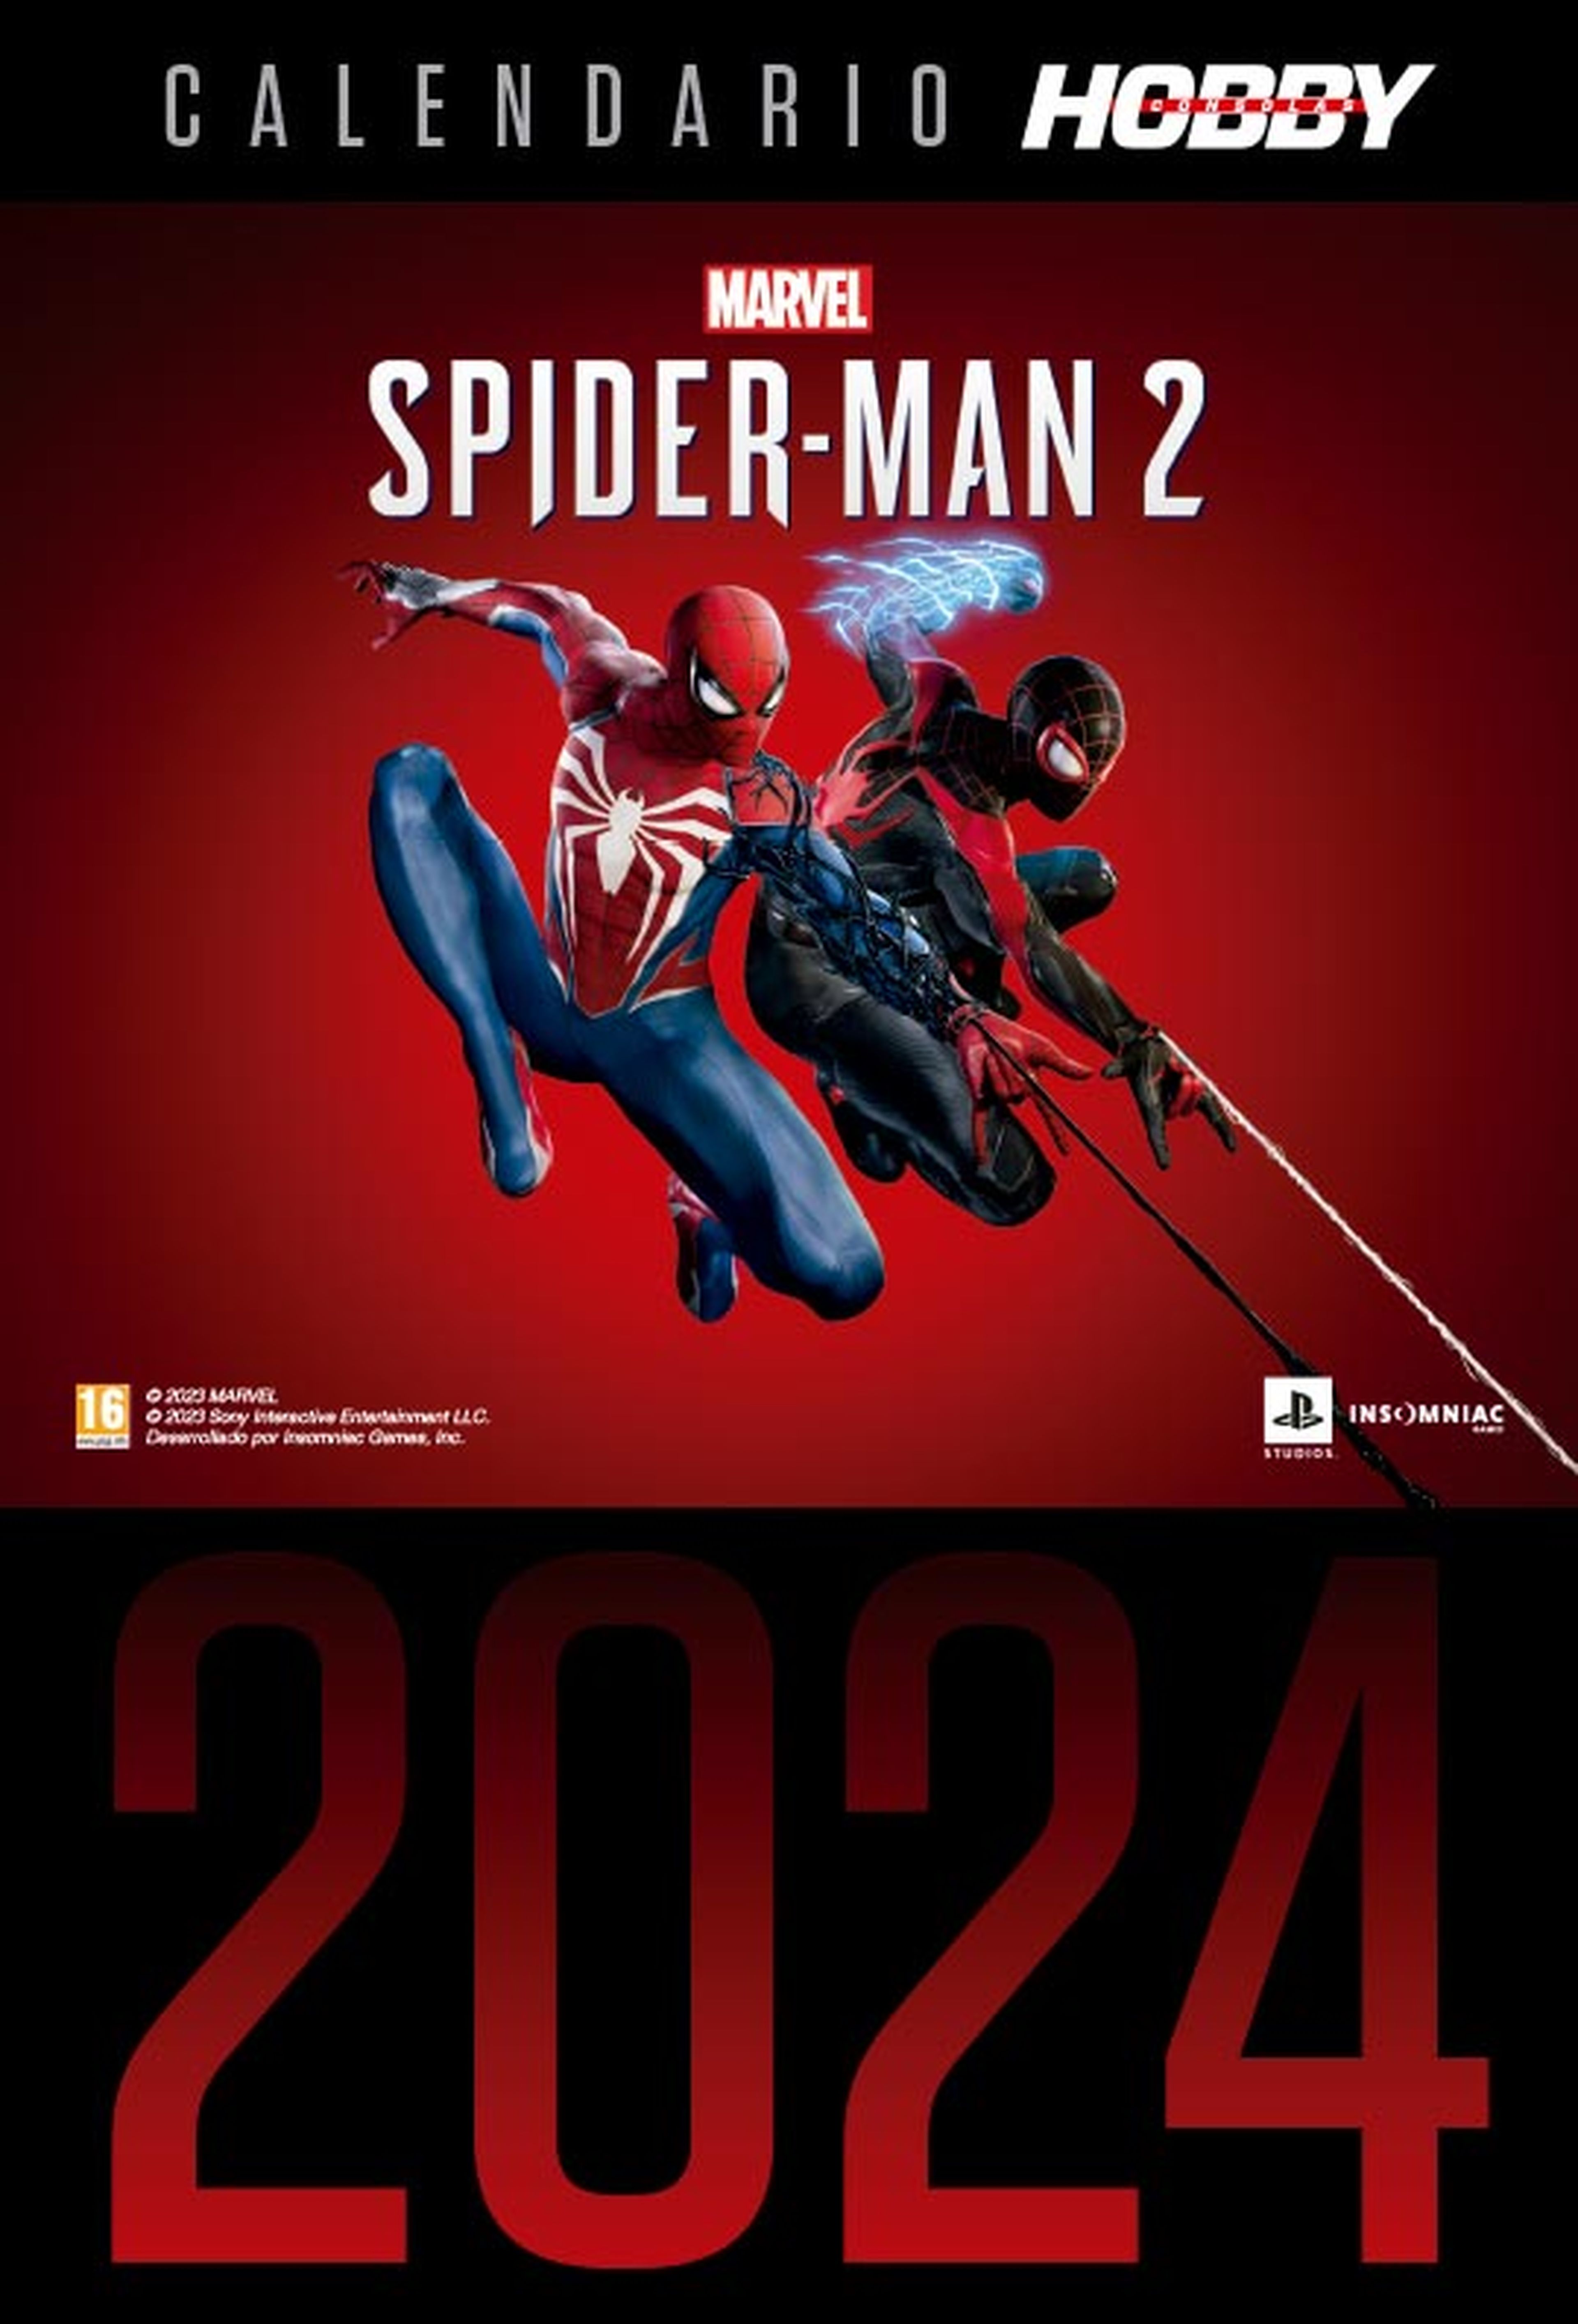 Hobby Consolas 390, a la venta, con un calendario de 2024 de Marvel’s Spider-Man 2 de regalo